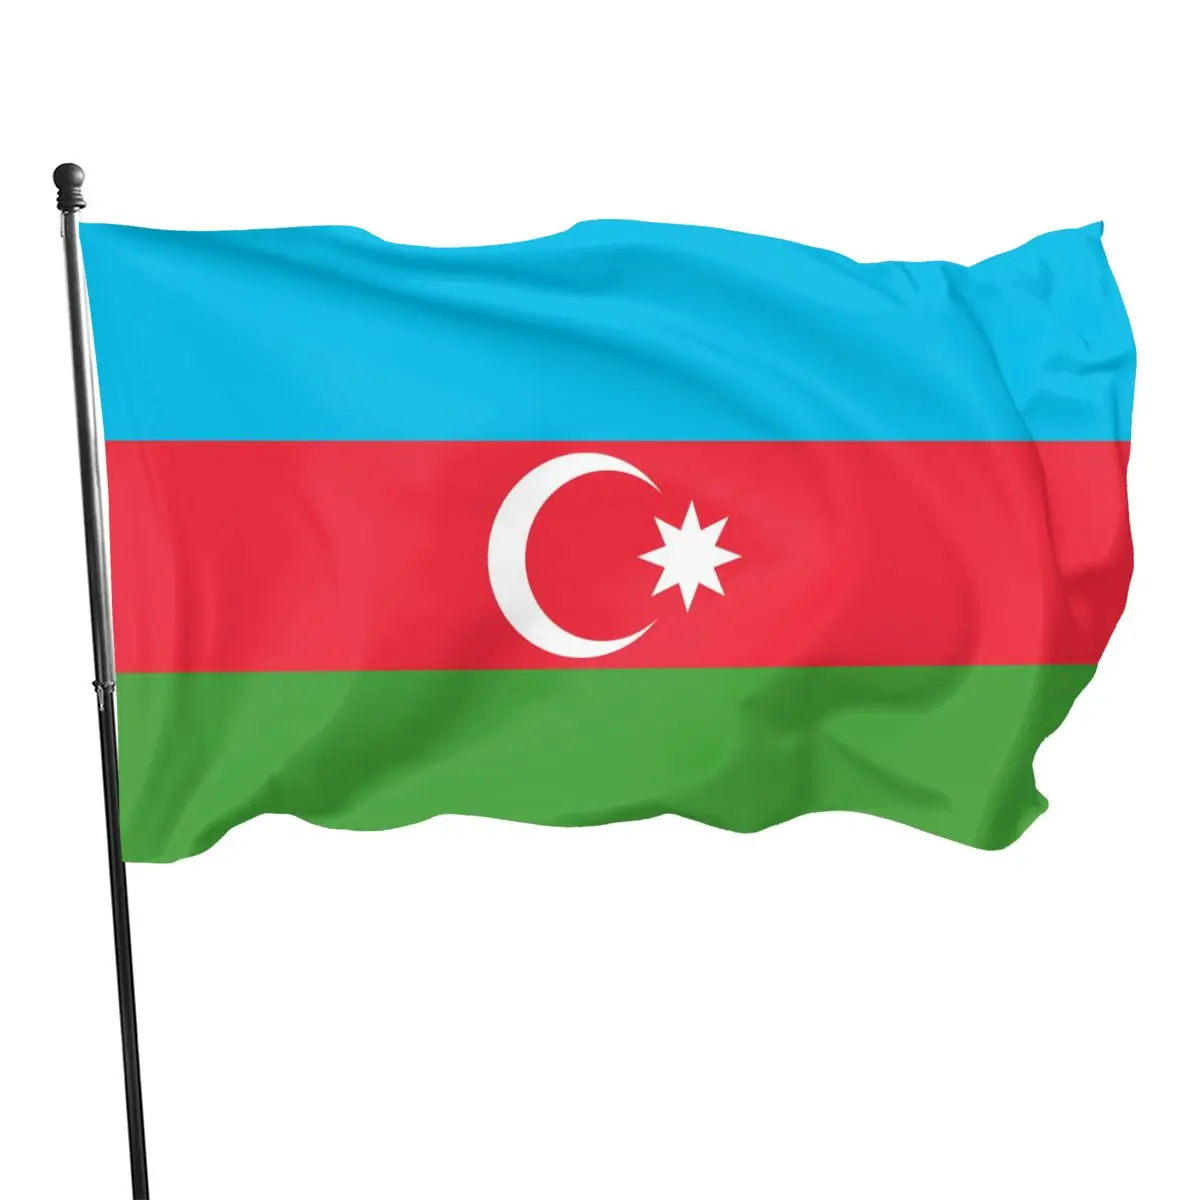 Aze-Bandera de la República de Azerbaycan, 2021, 90x150cm